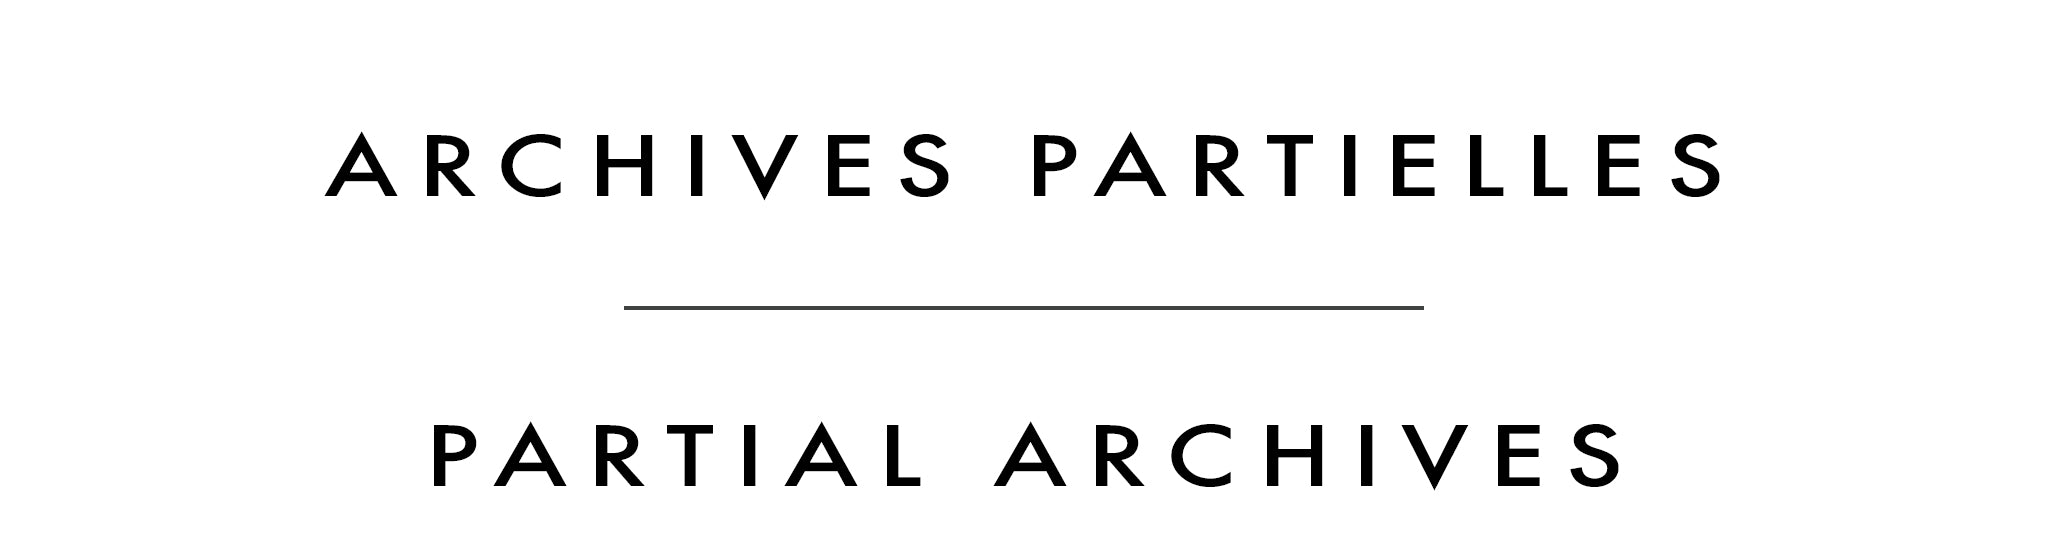 Archives partielles | Partial Archives | David Langevin